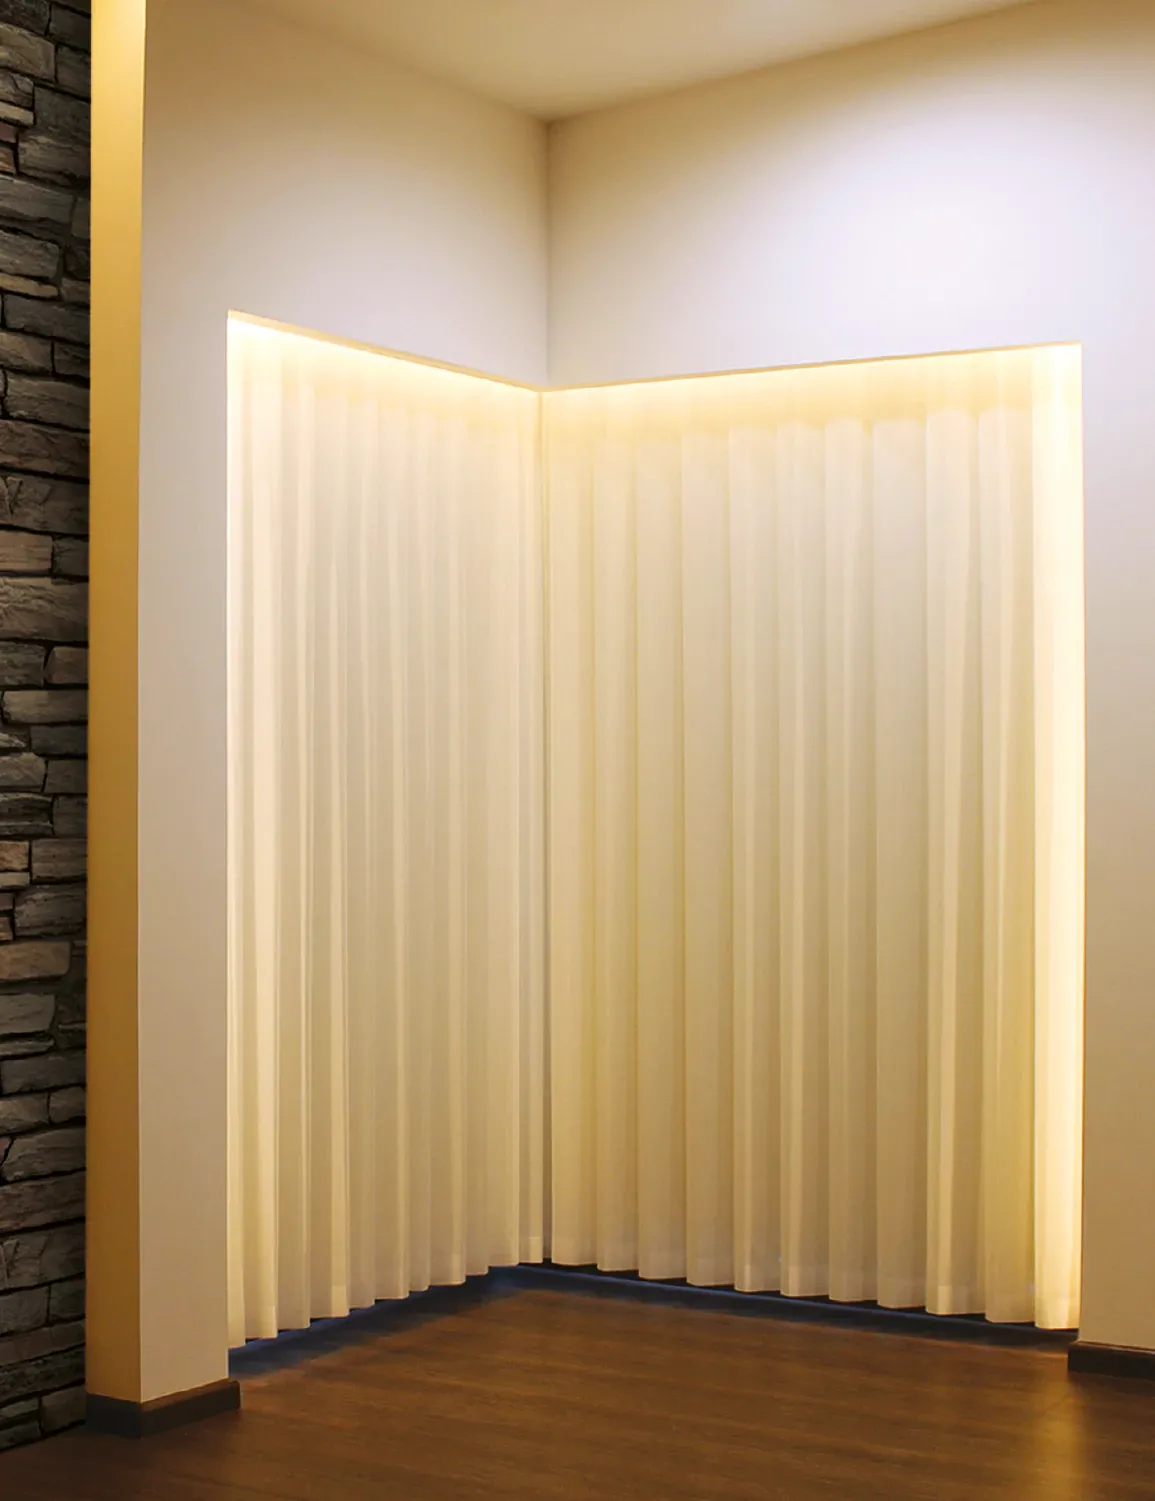 La persiana Velum hace ilusión a una cortina, pero cuenta con toda la funcionalidad y versatilidad de una persiana vertical.